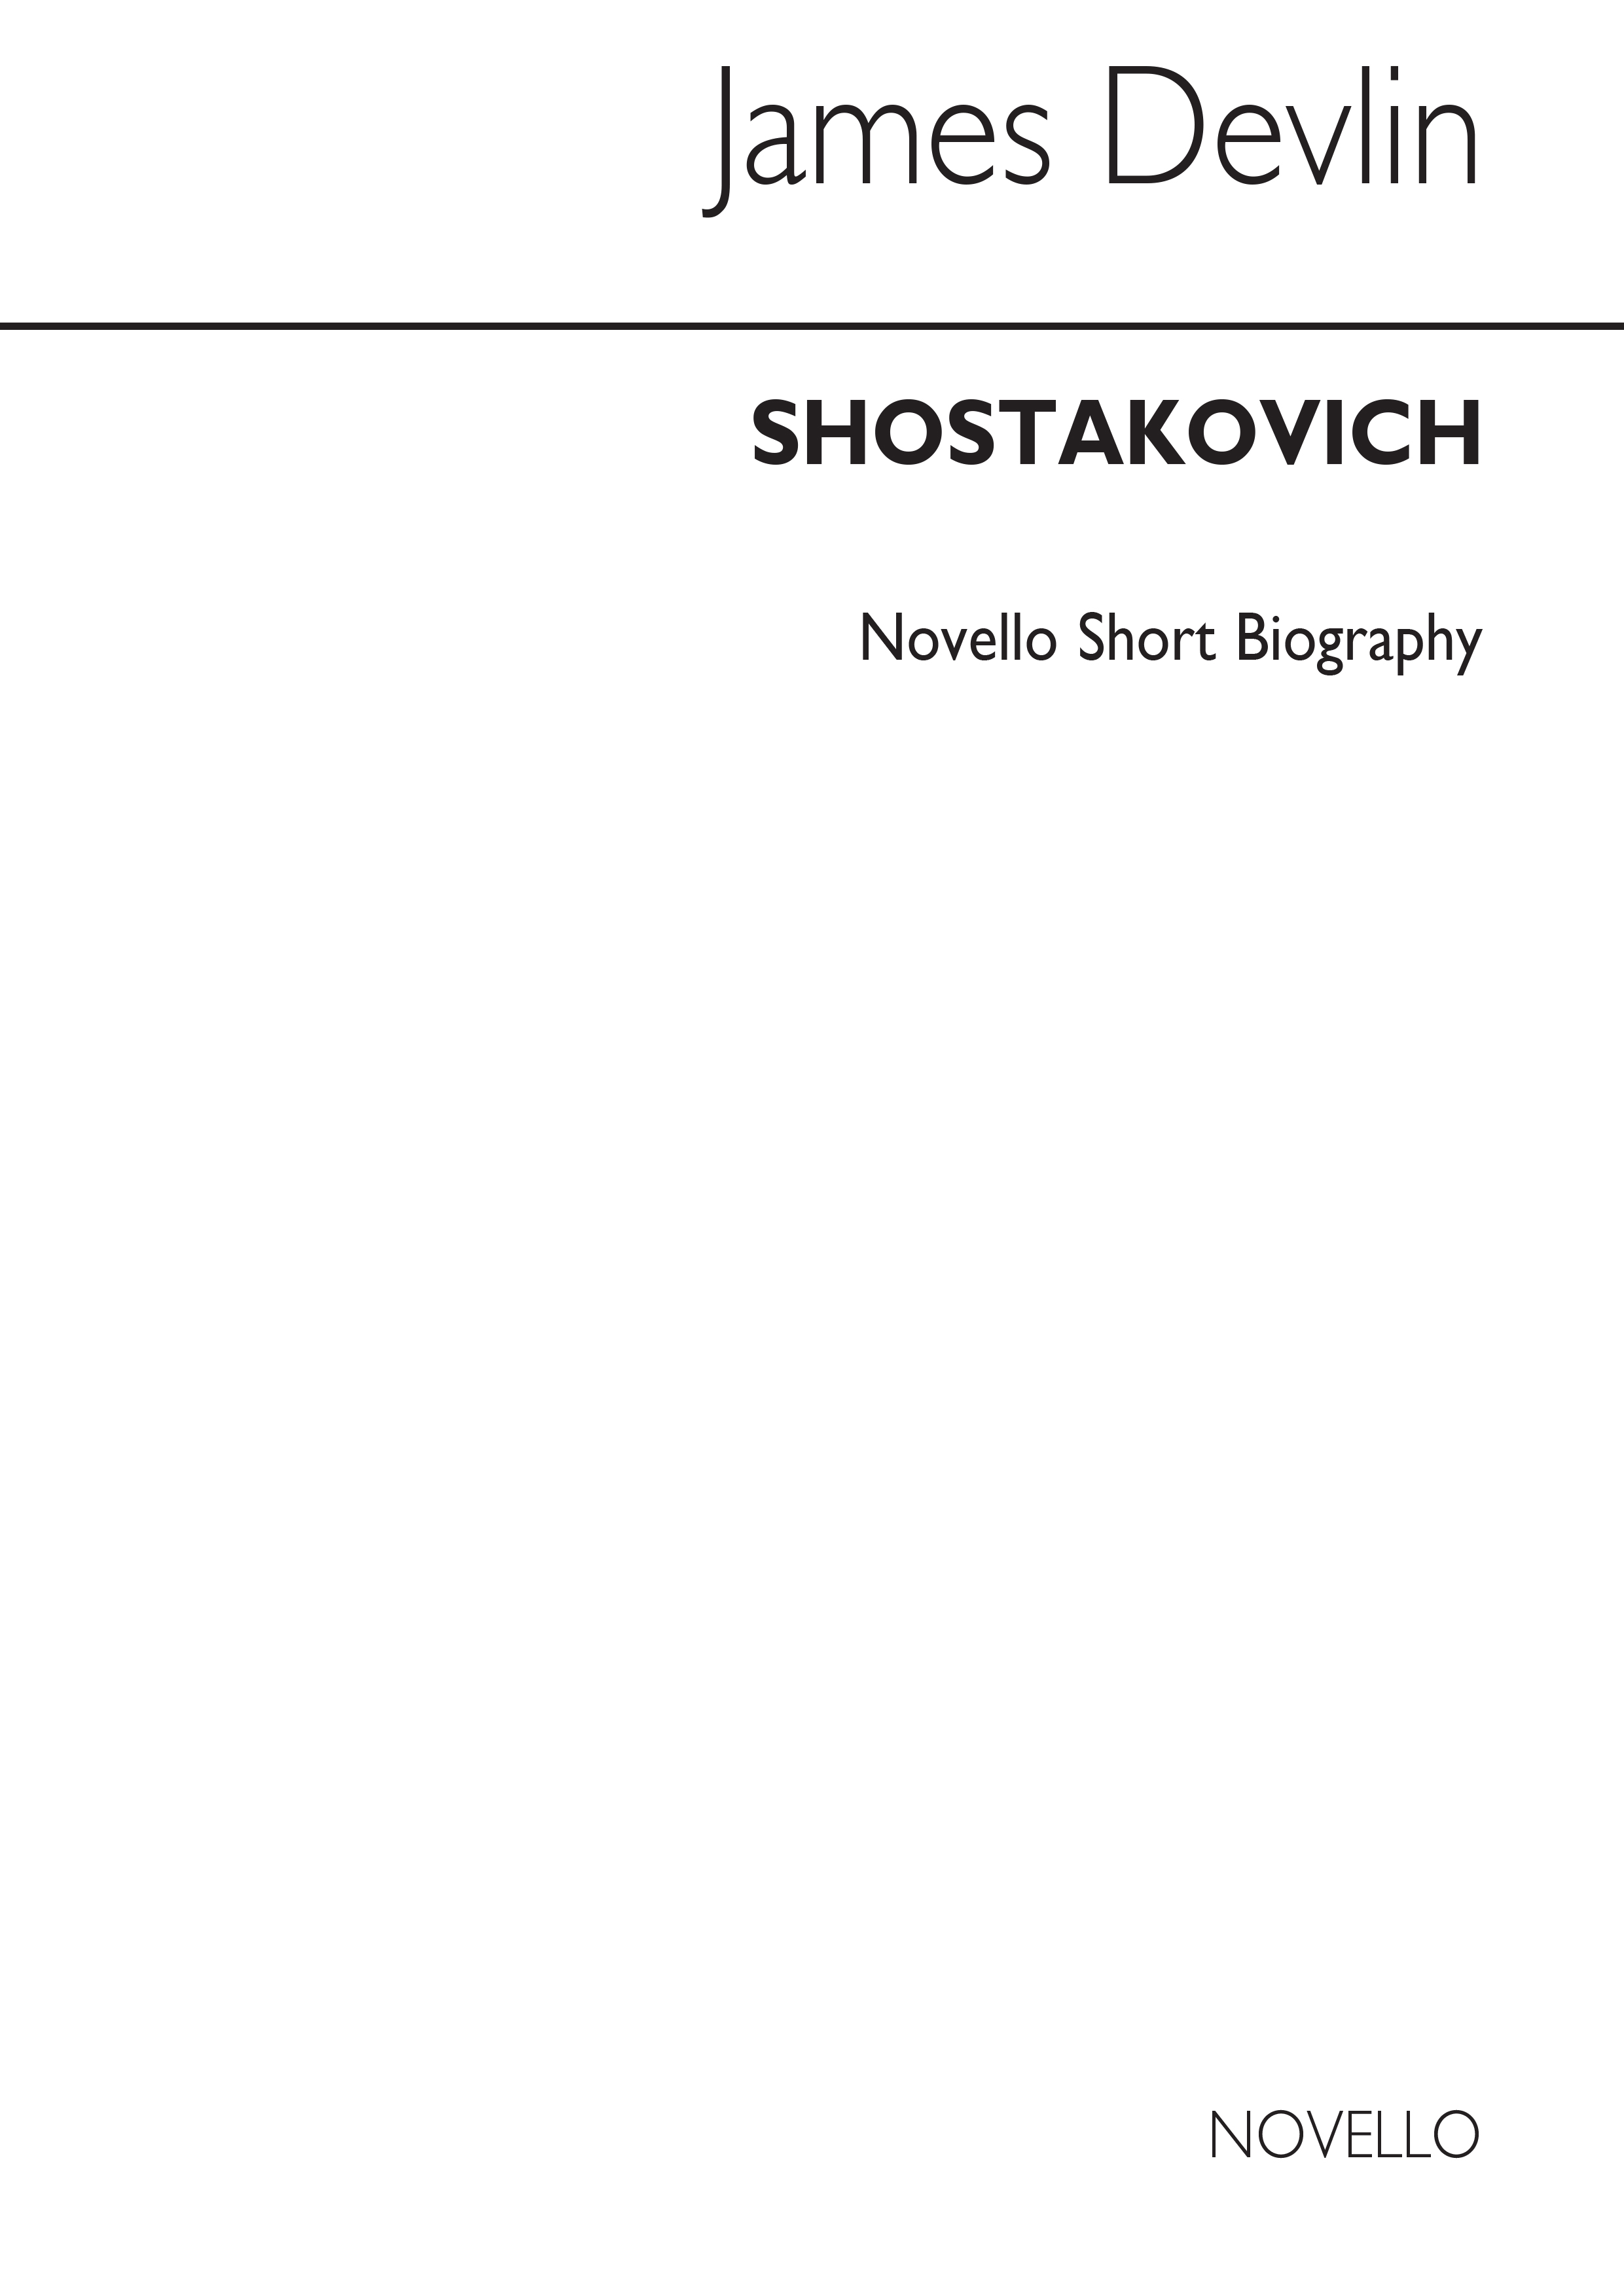 Dimitri Shostakovich: Shostakovich Biography (Delvin)